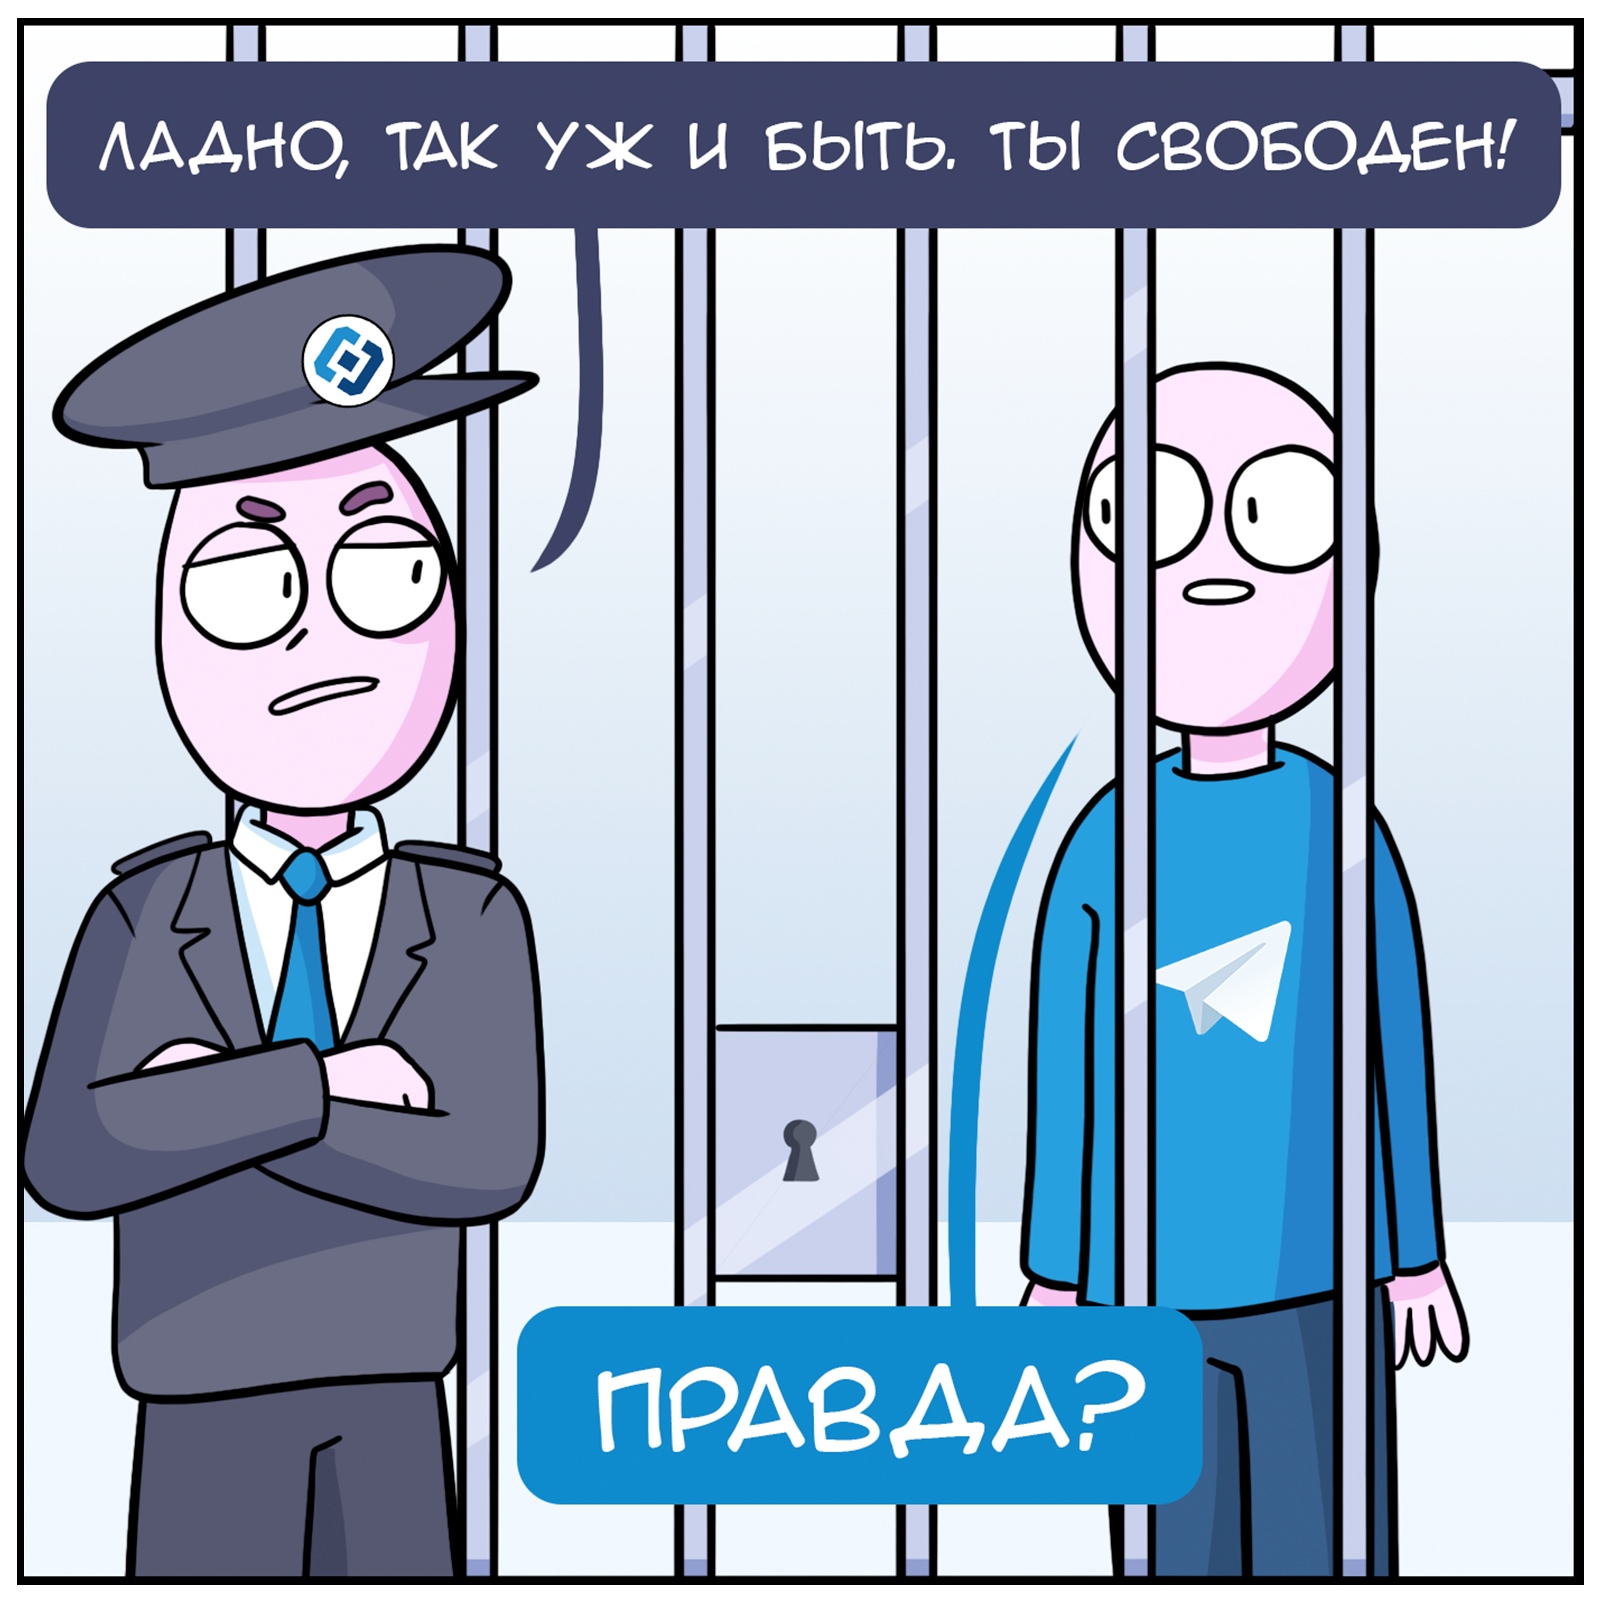 Телеграм и Роскомнадзор